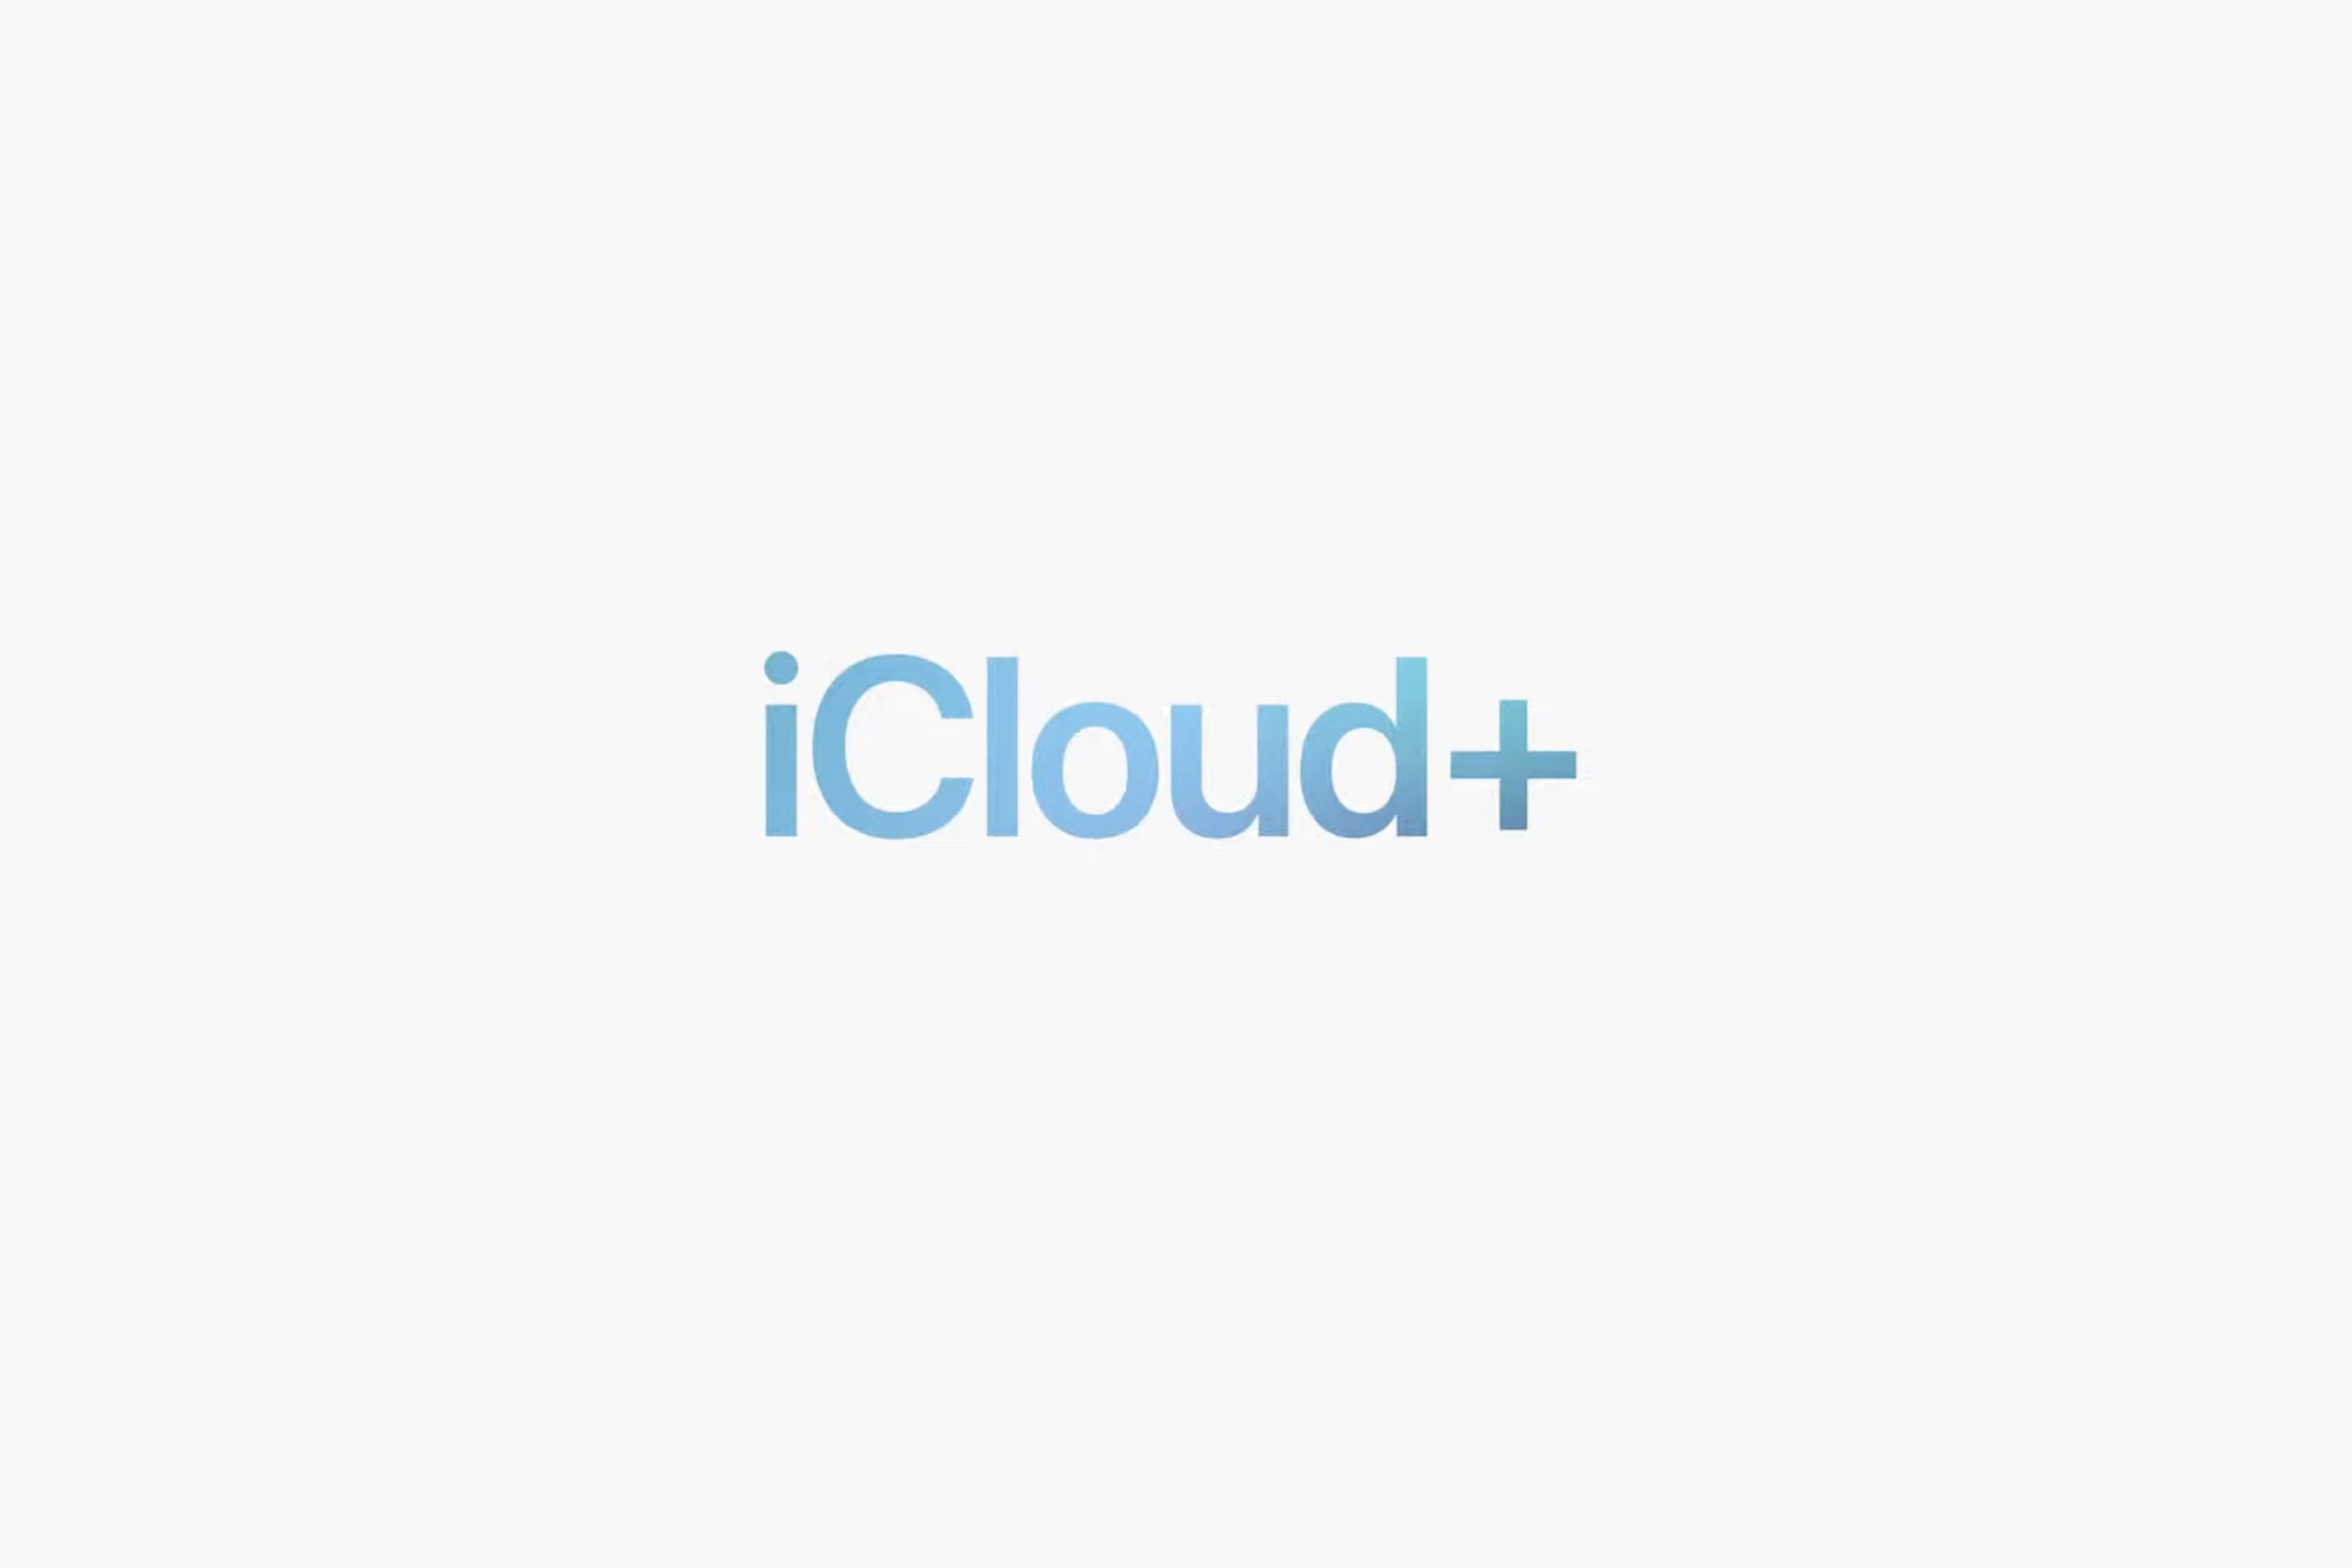 Apple’s iCloud Plus logo.